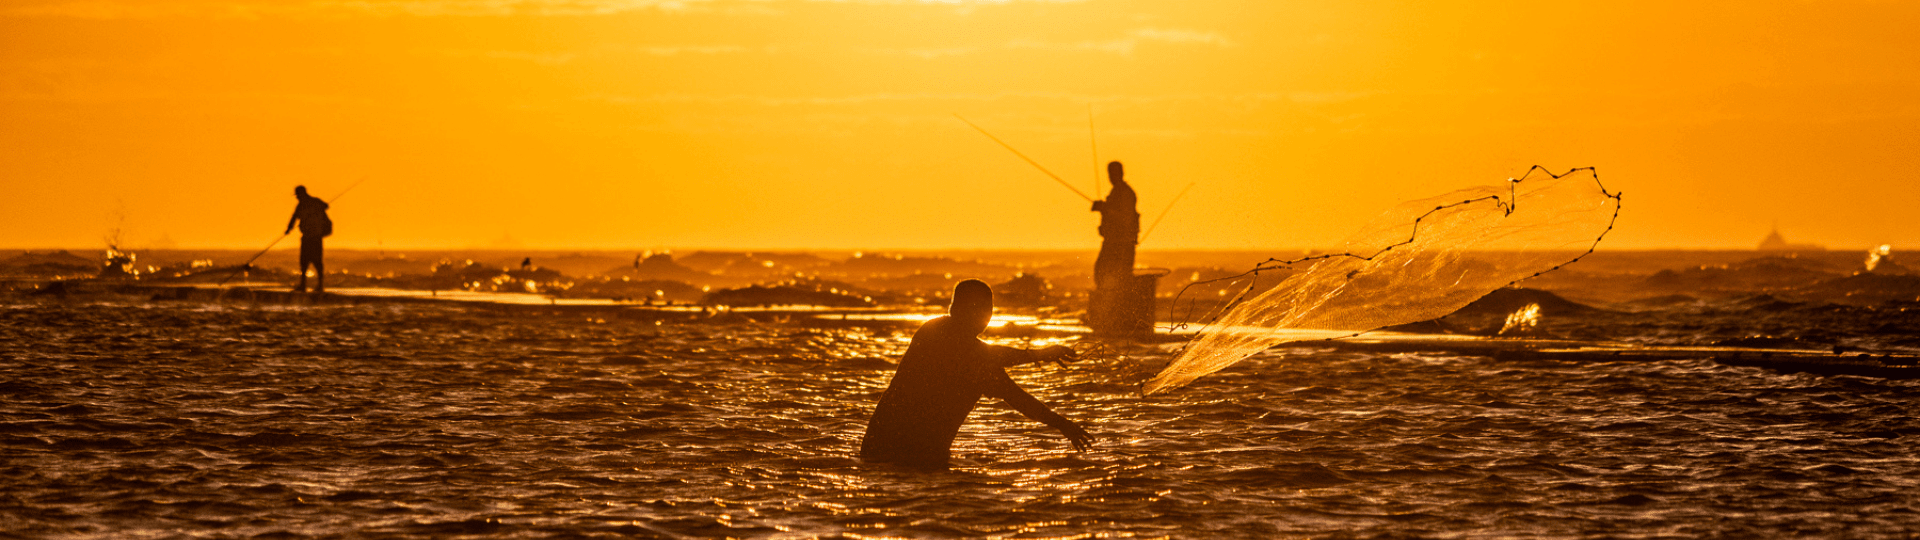 Fishing at sunset in Galveston tx